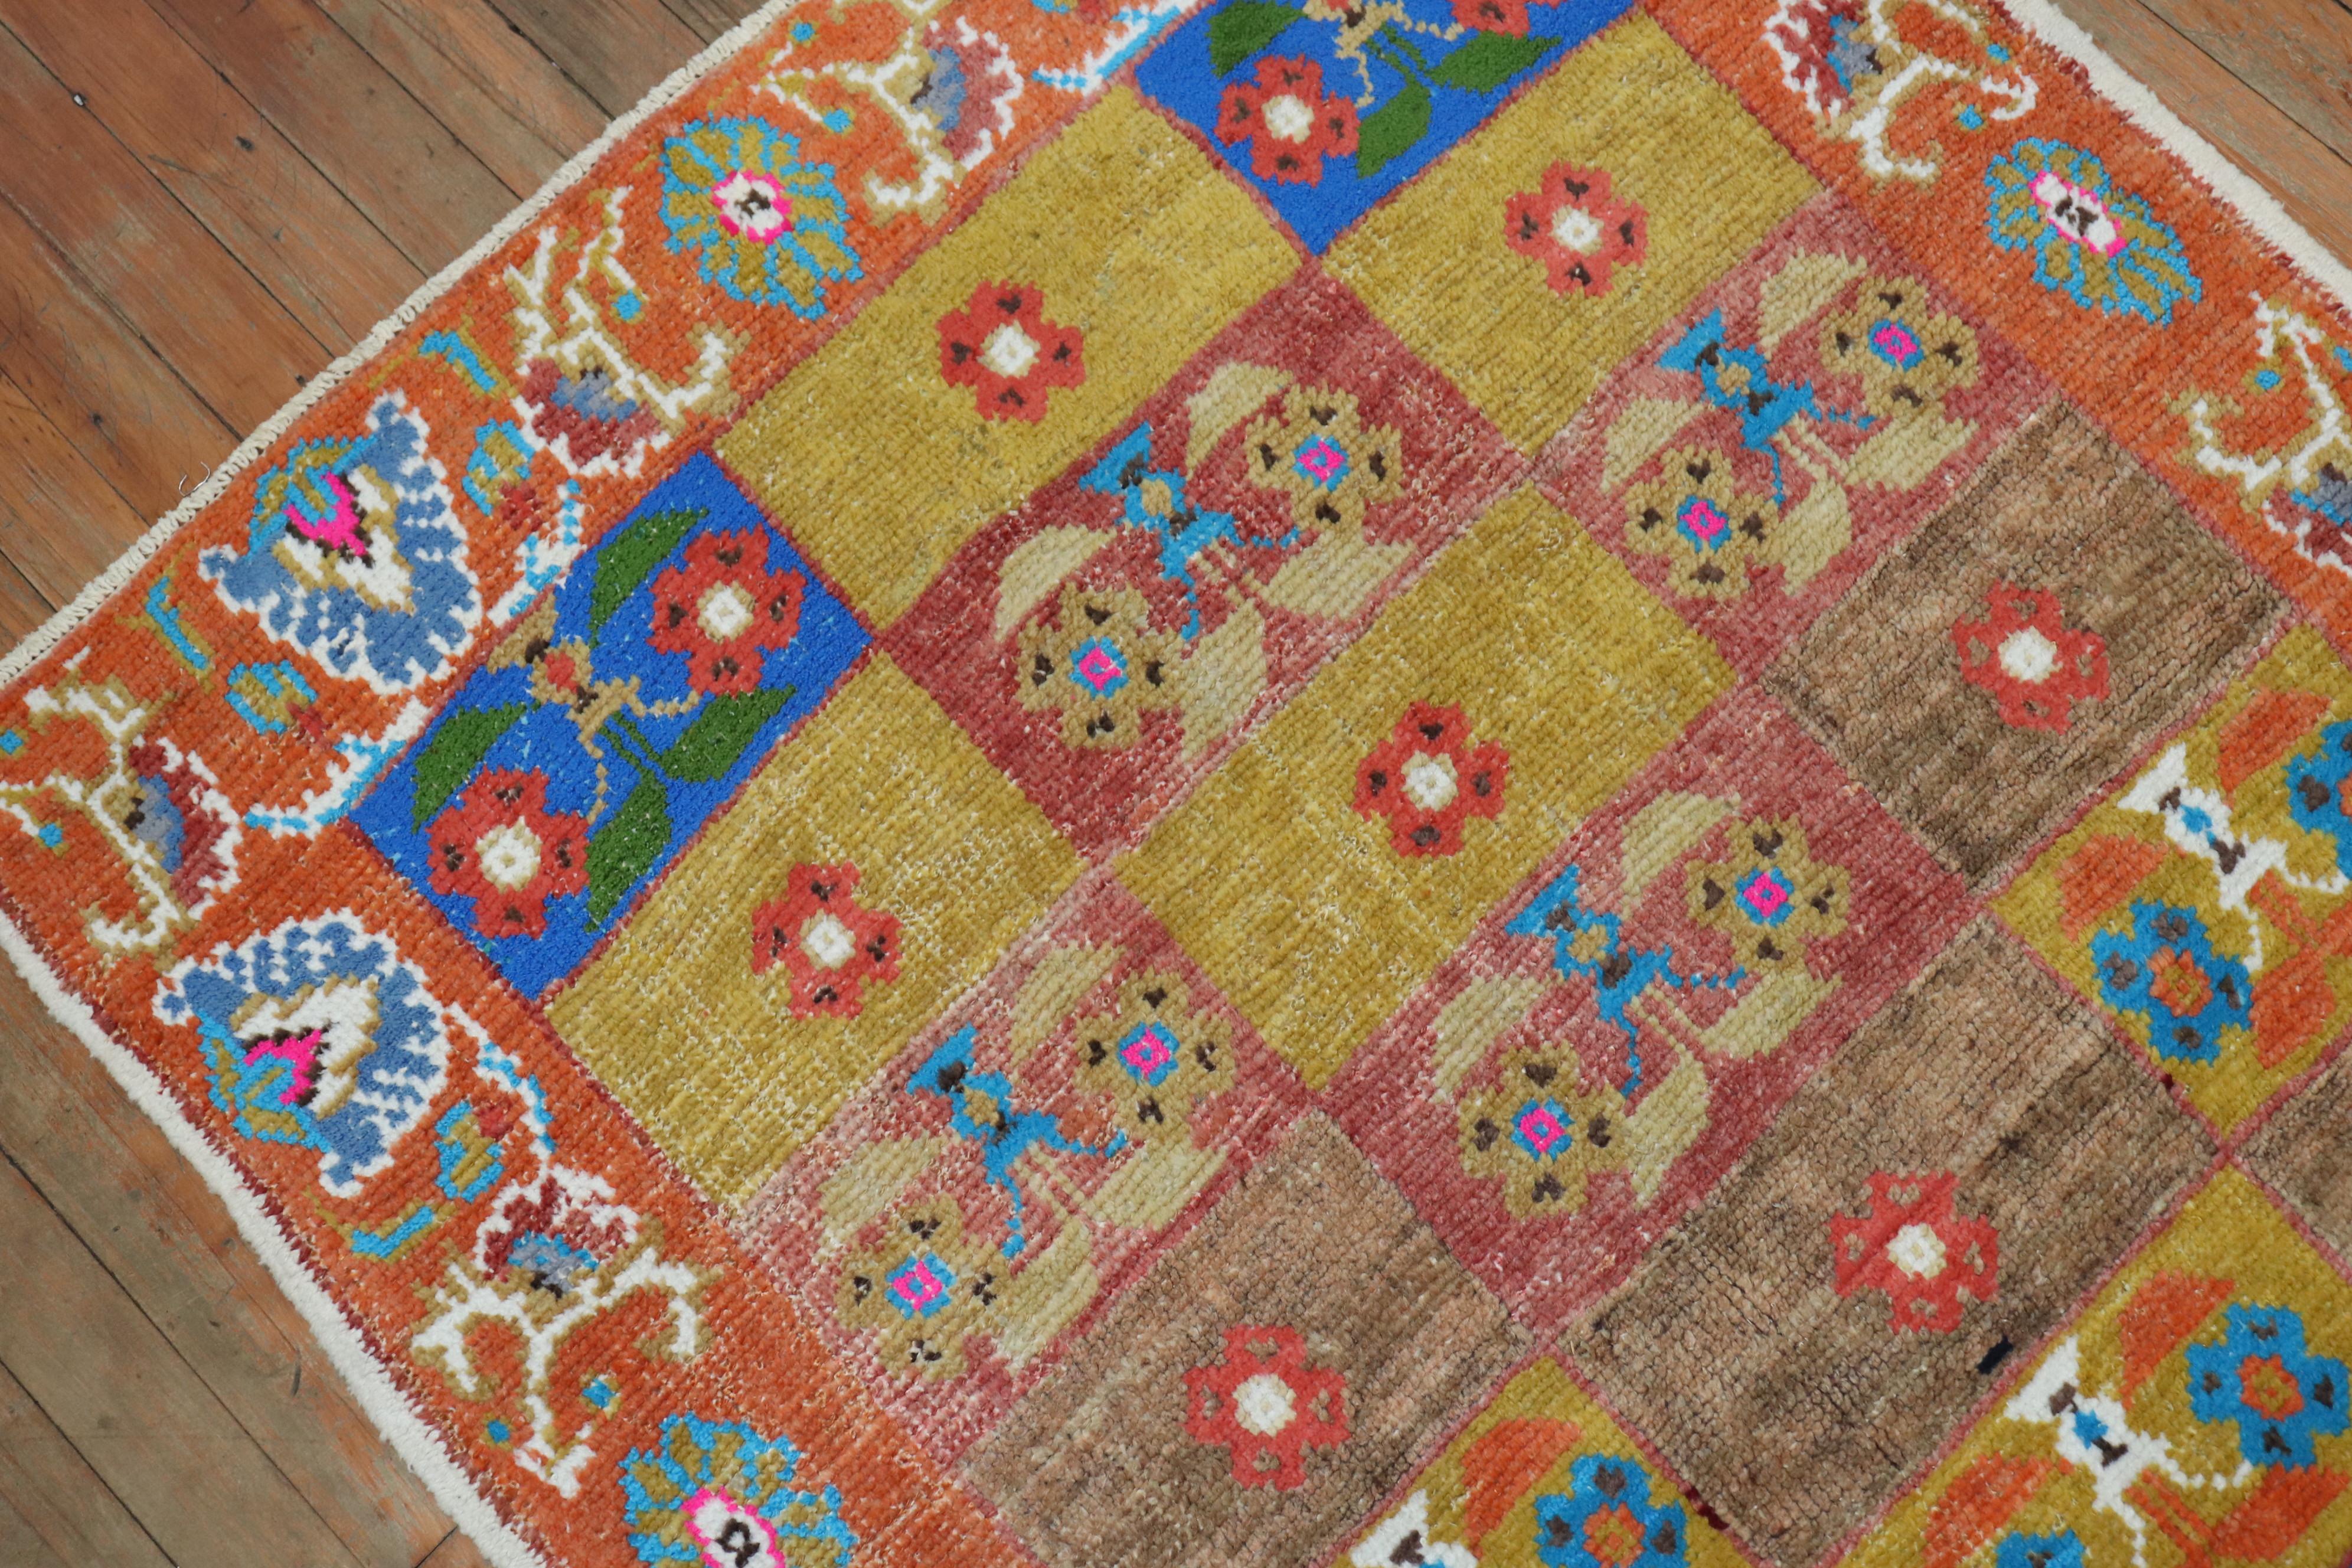 Une paire de tapis turcs d'Anatolie du milieu du 20e siècle aux couleurs vives et intenses. Une boîte répétitive multicolore entourée d'une bordure en forme de peau d'orange

Mesures : 3'2